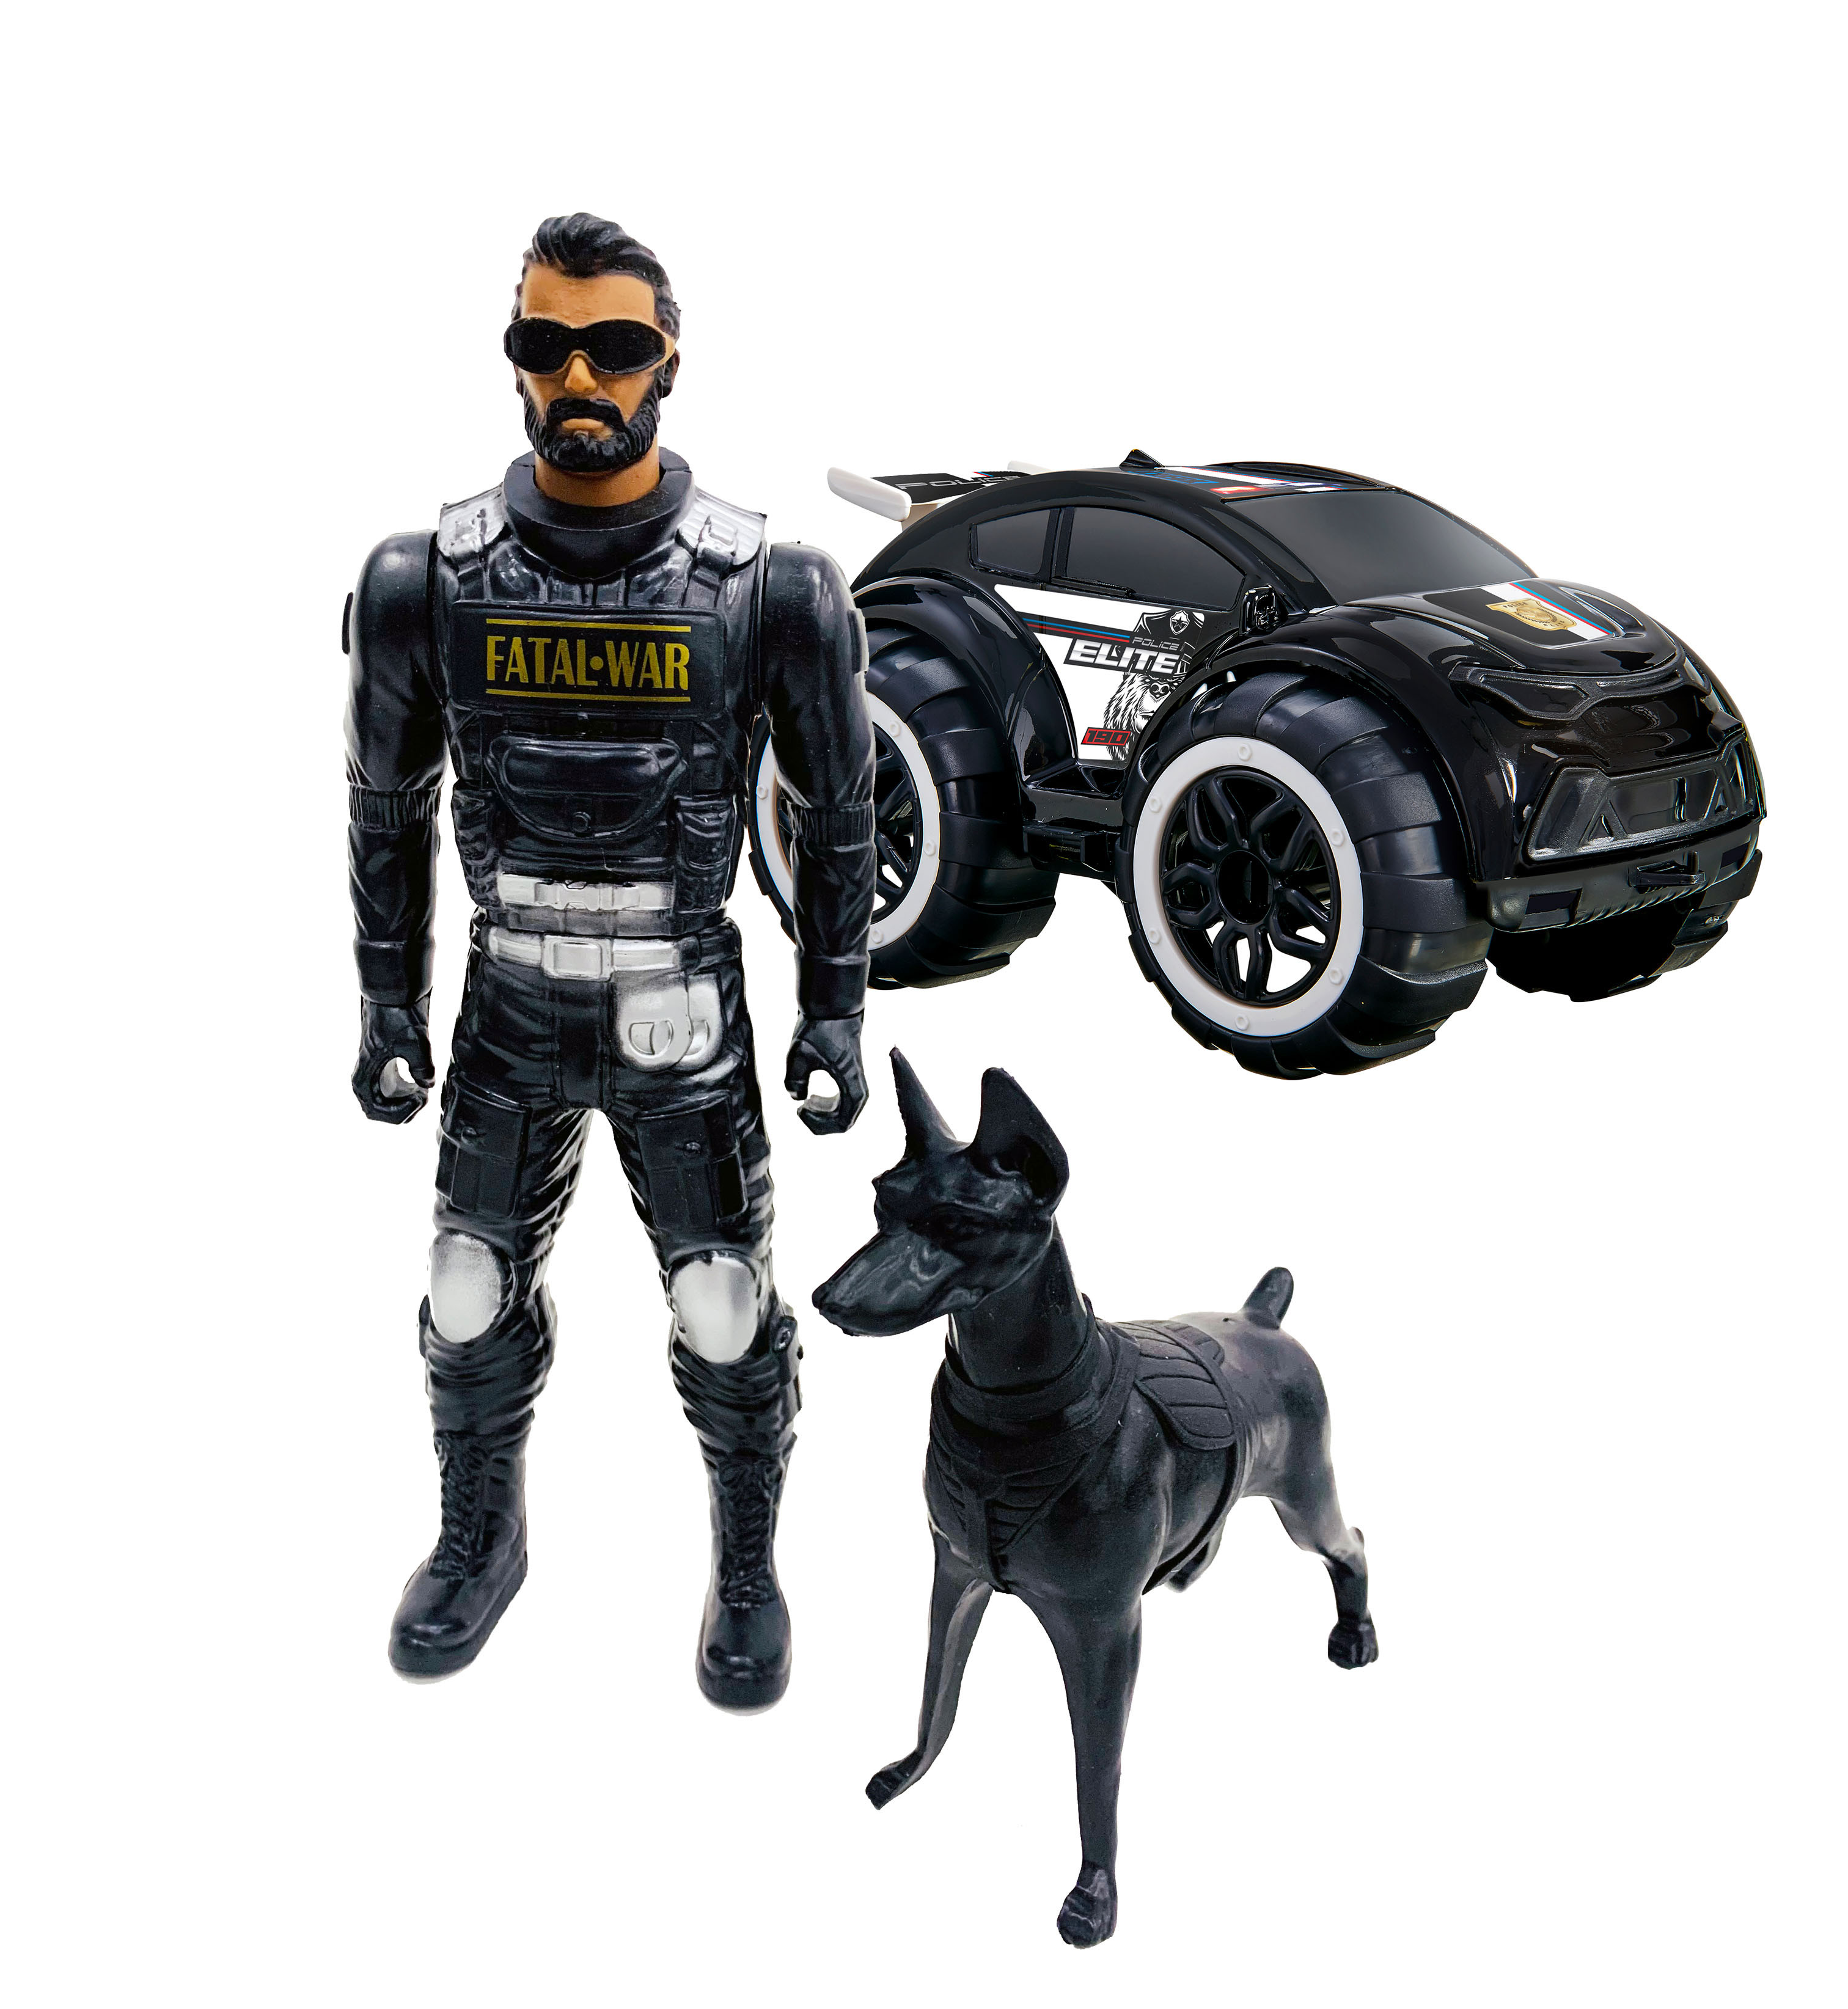 Mix Boneco  Polícia/Cachorro/SUV Na Caixa